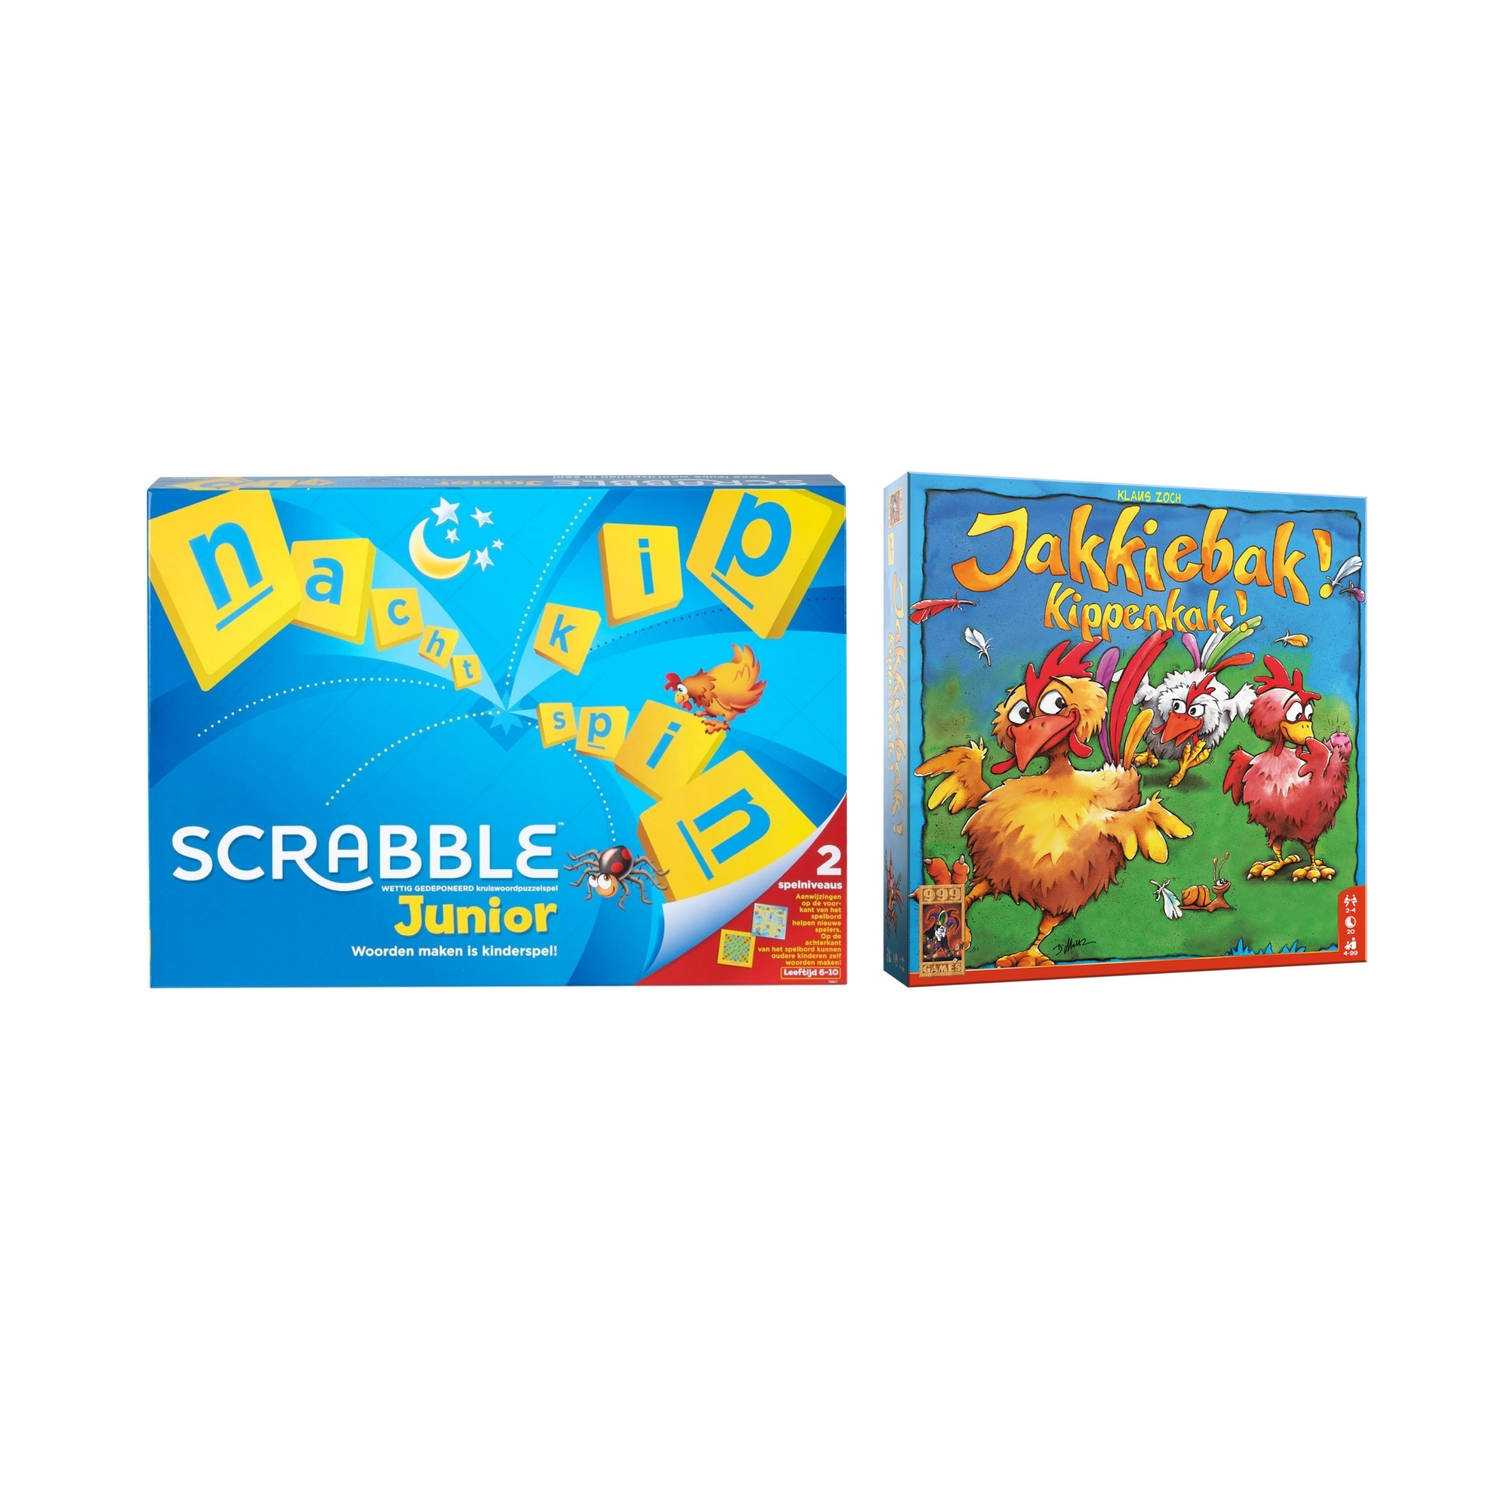 Mattel Spellenbundel - Bordspel - 2 Stuks - Scrabble Junior & Jakkiebak! Kippenkak!